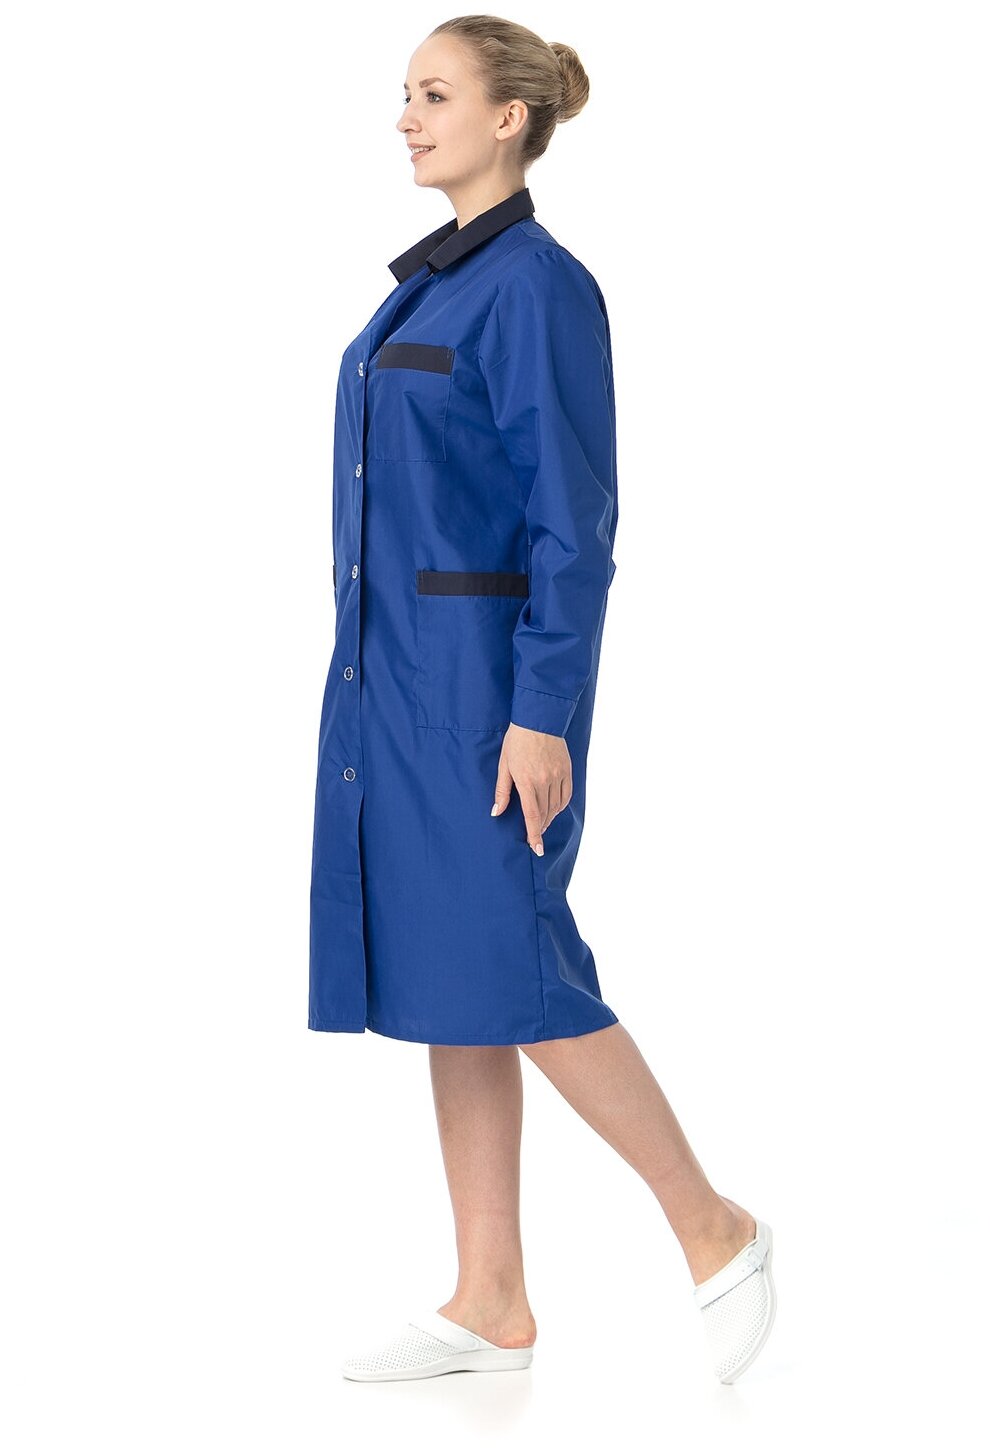 Халат женский "Модельный" (ИТР, васильковый с темно-синей отделкой) (размер 56-58, рост 170-176)